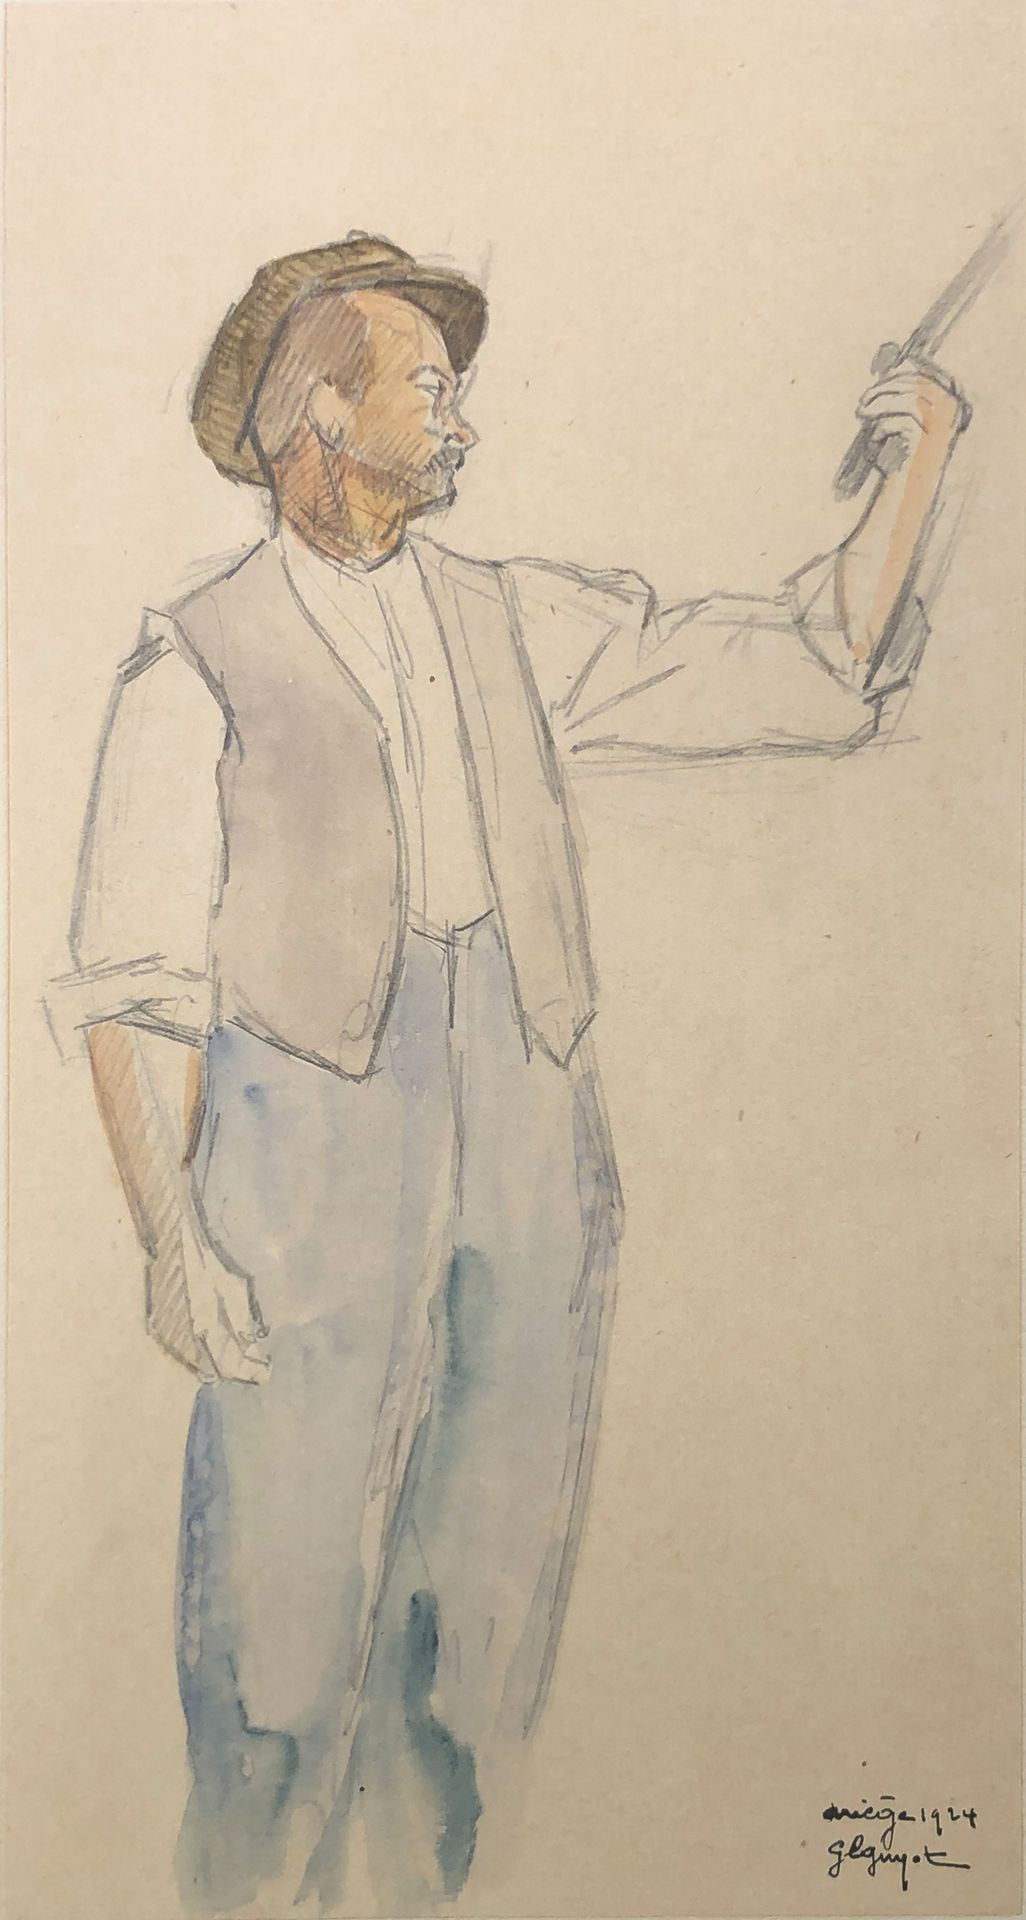 Null 乔治-卢西恩-古约(1885-1973)

摸牛人》，1924年。

石墨和水彩画，右下方有签名、日期和位置。 

30 x 16 cm